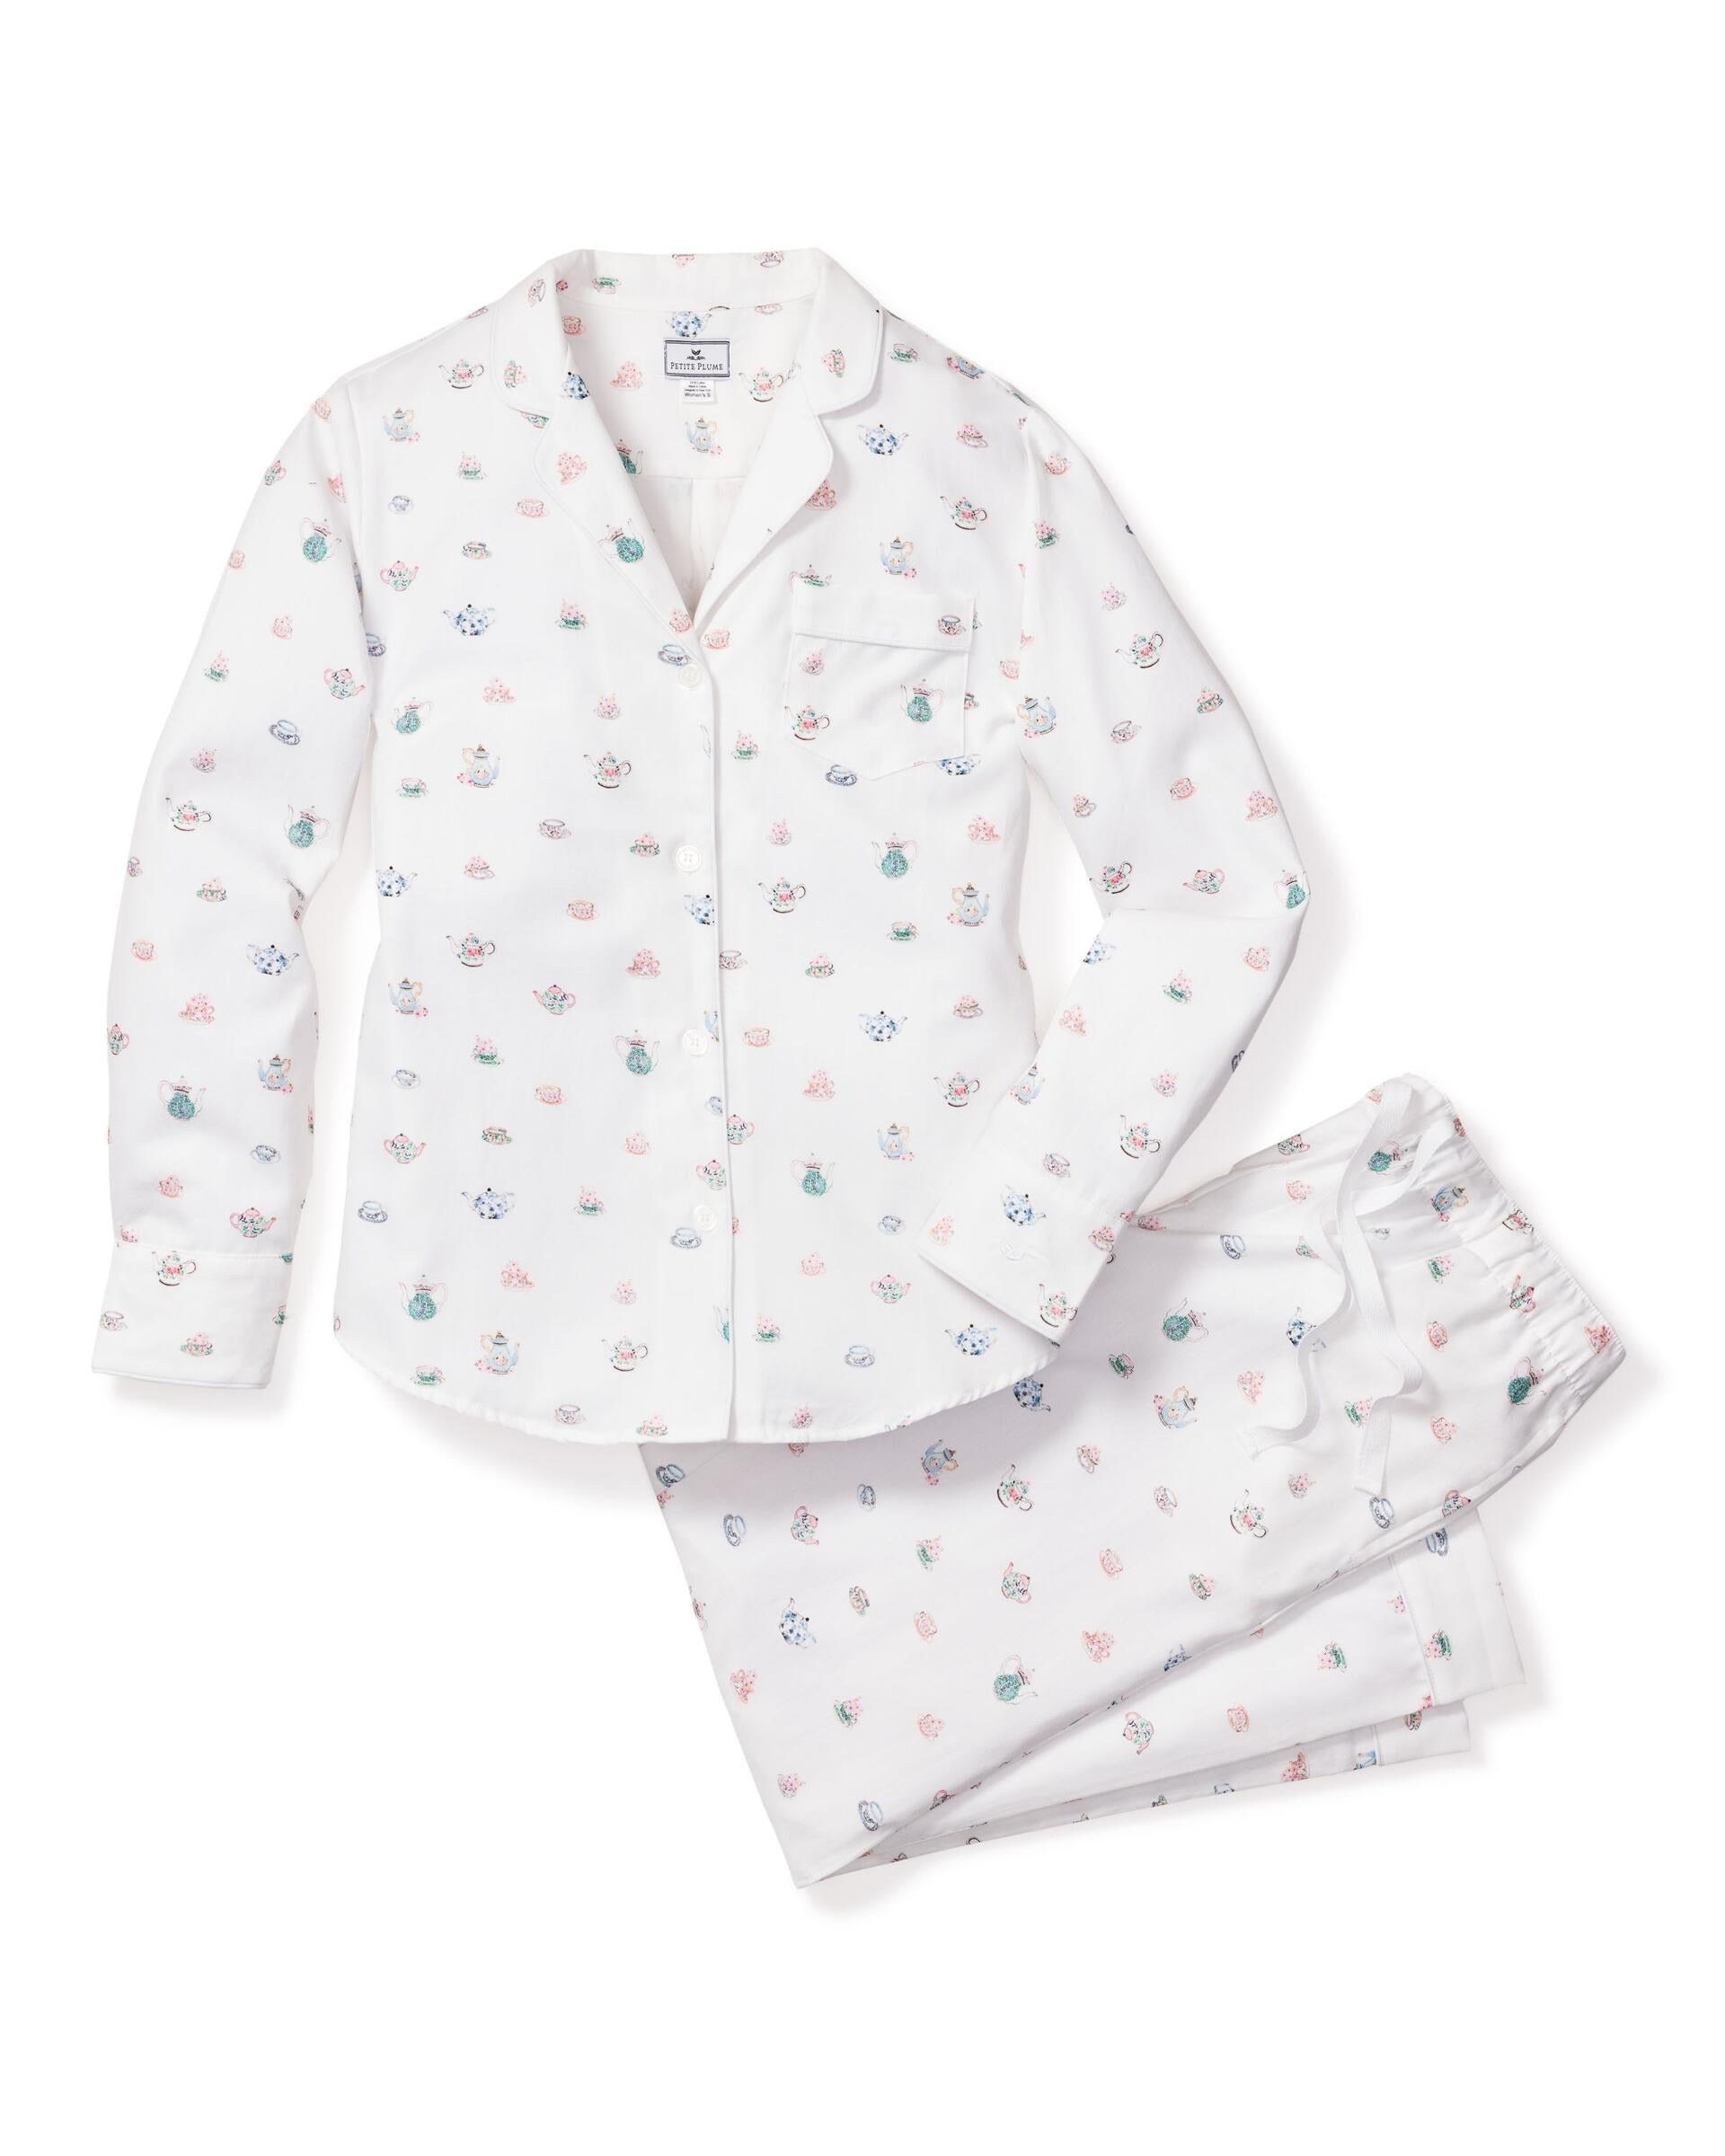 Women's Afternoon Tea Pyjama Set - Petite Plume